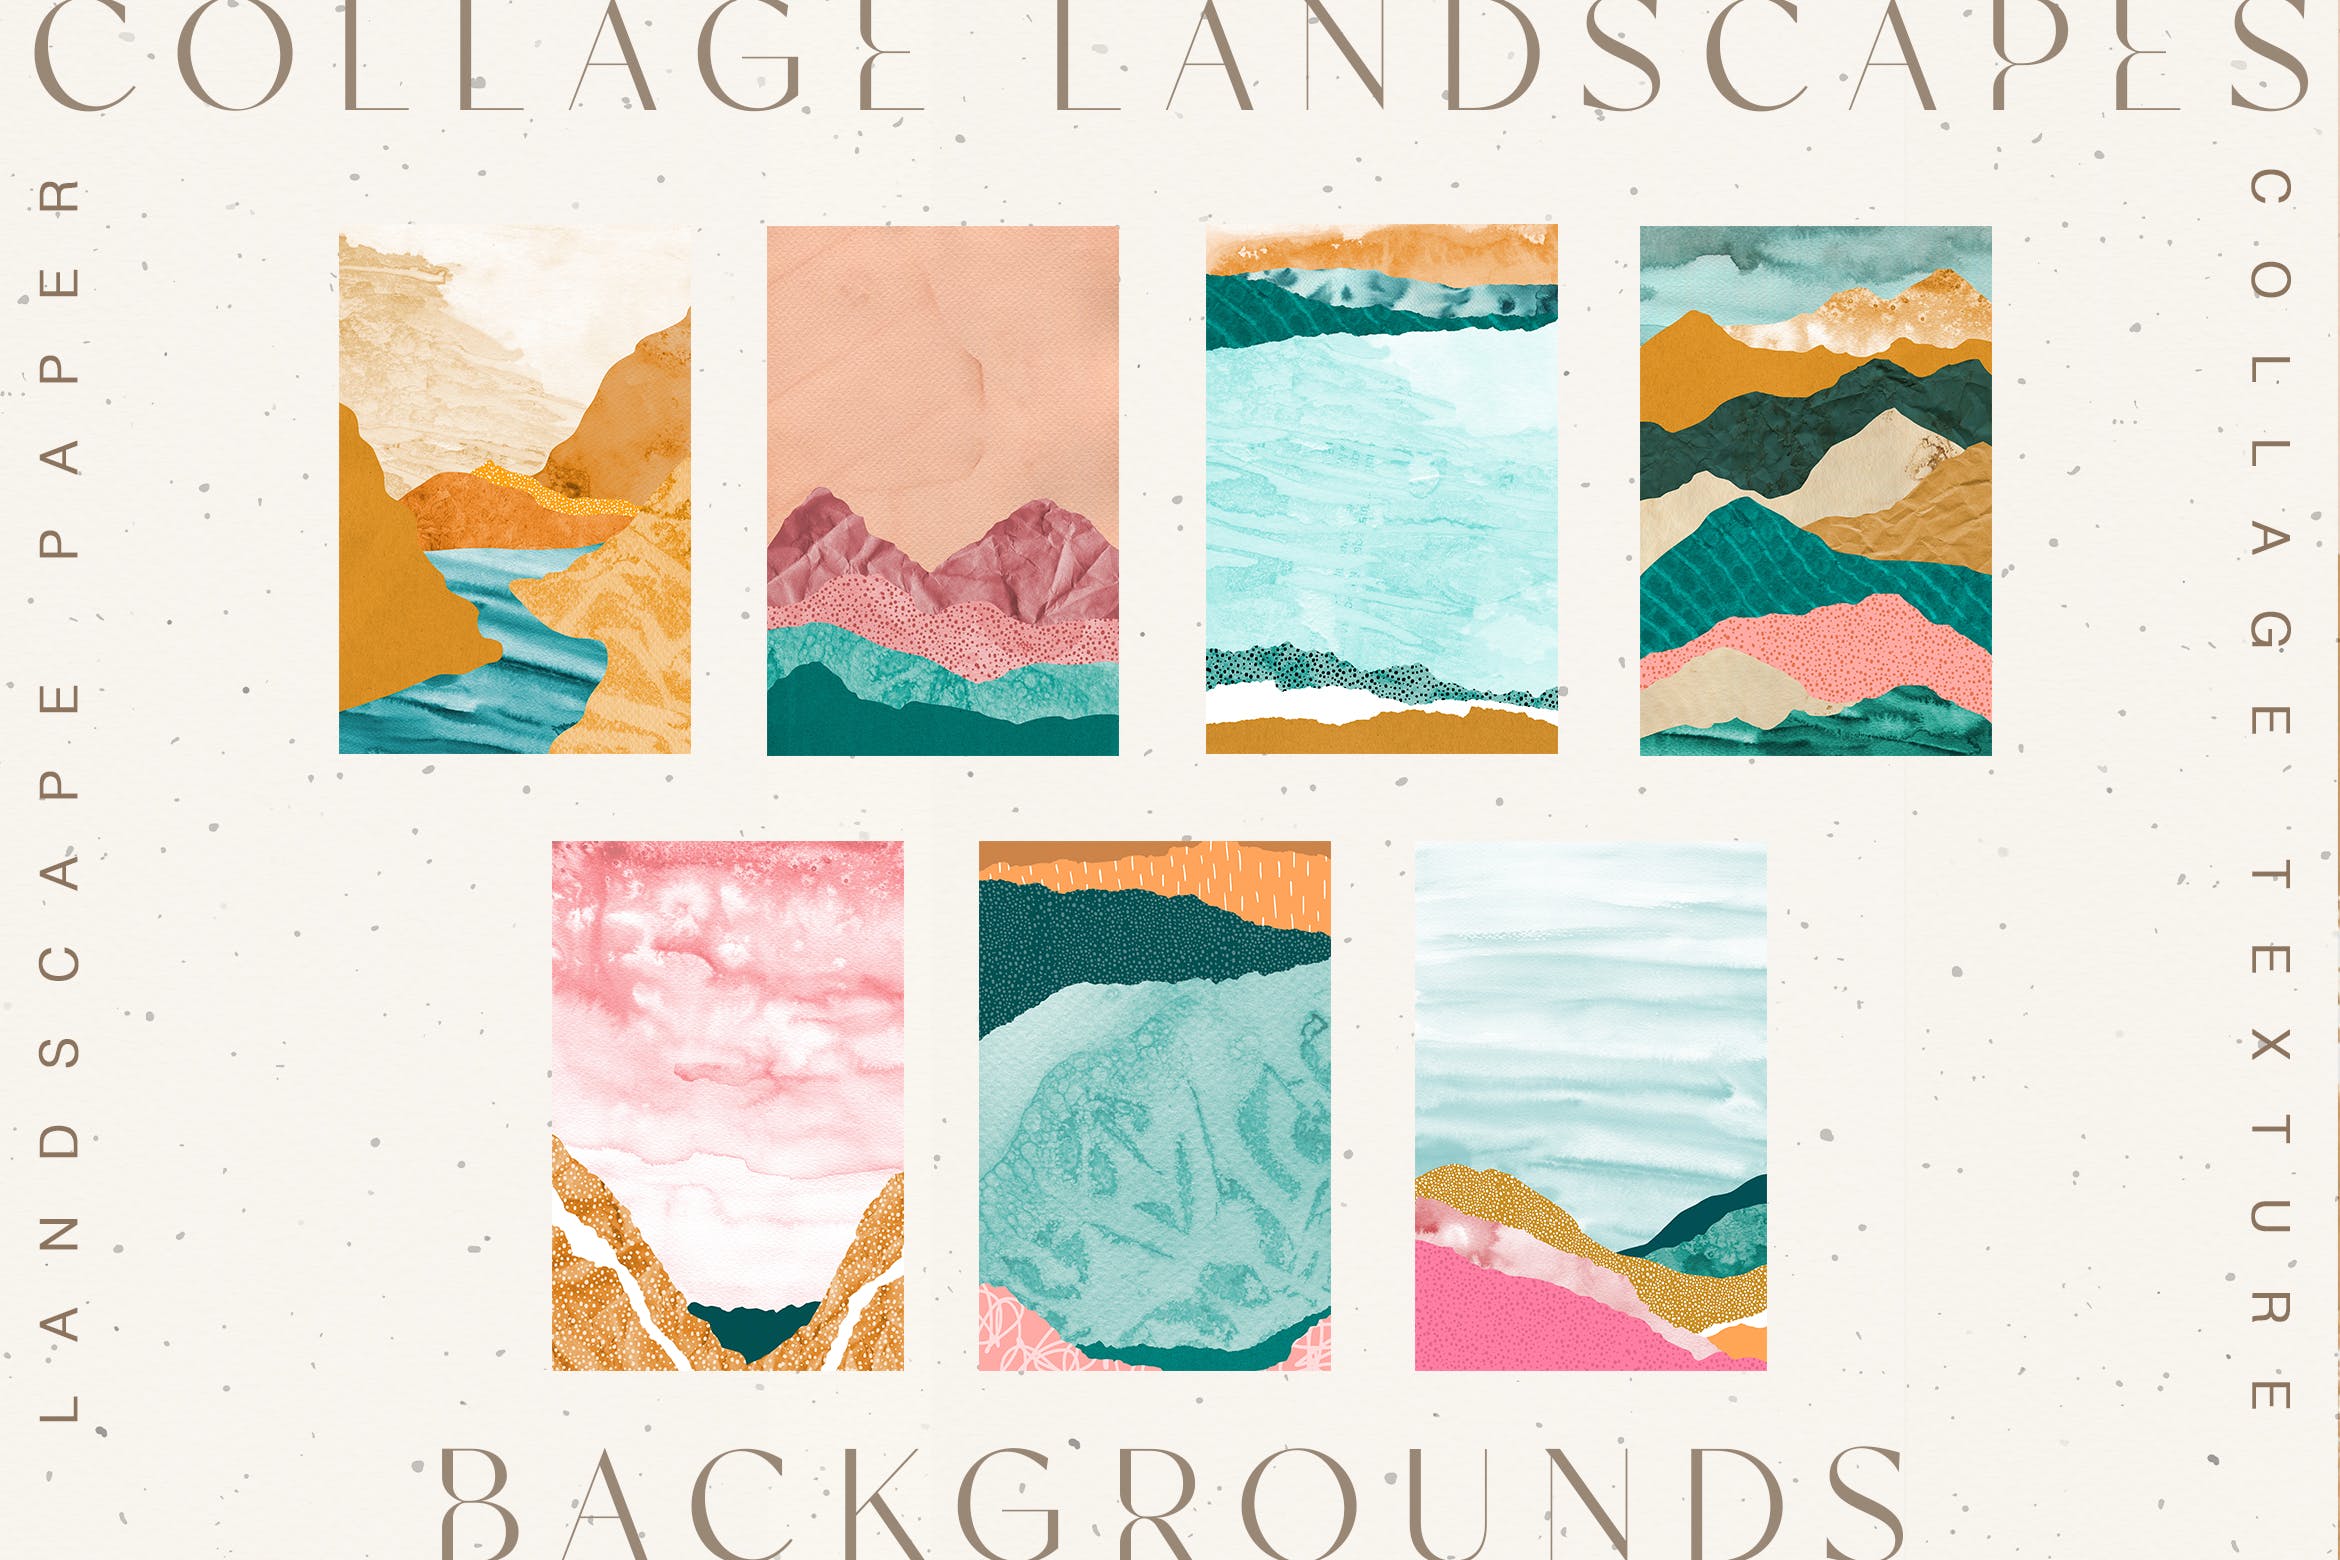 拼贴山峰景观纹理素材 Collage Landscape Textures 图片素材 第1张